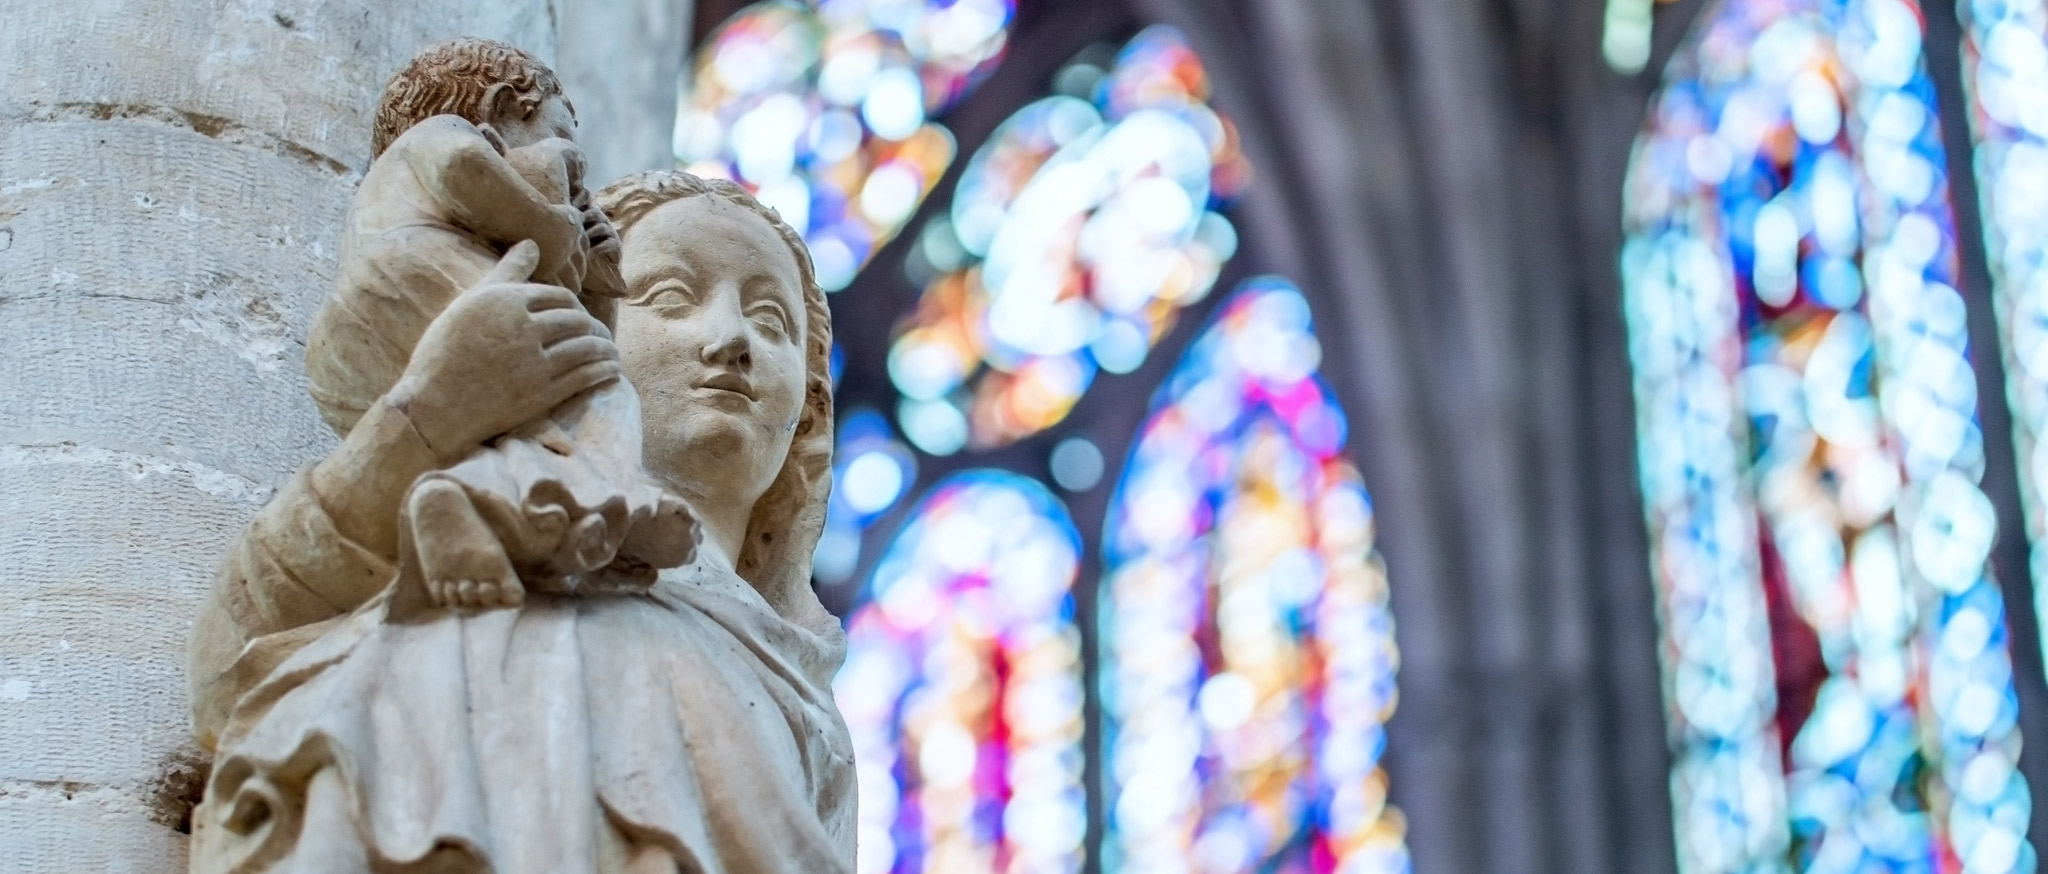 Cathedral-Saint-Pierre-Saint-Paul-credit-BC-images